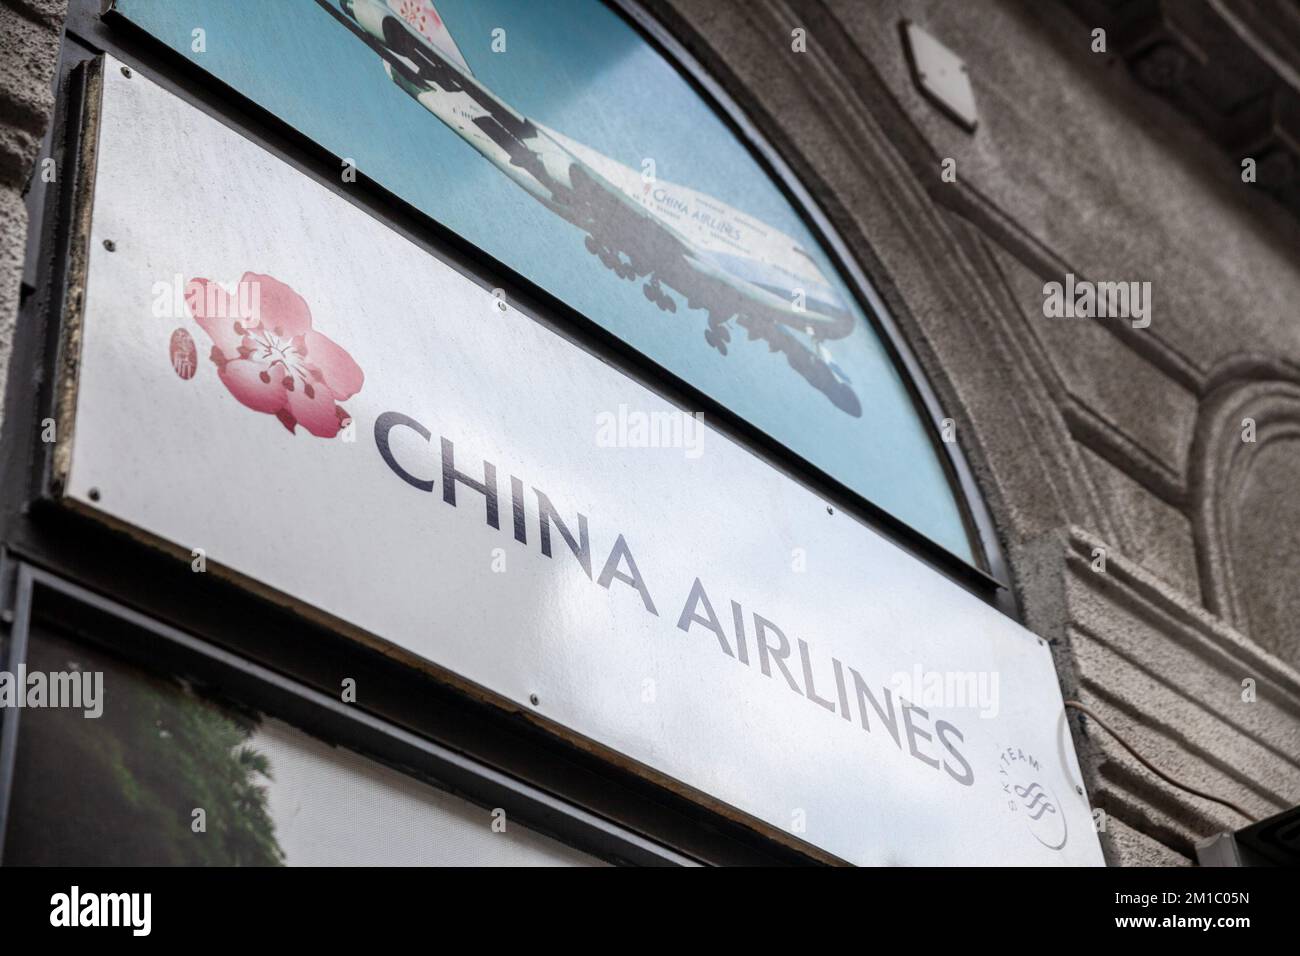 Photo d'un panneau avec le logo de China Airlines à Budapest, Hongrie. China Airlines est le transporteur public de la République de Chine, et o Banque D'Images